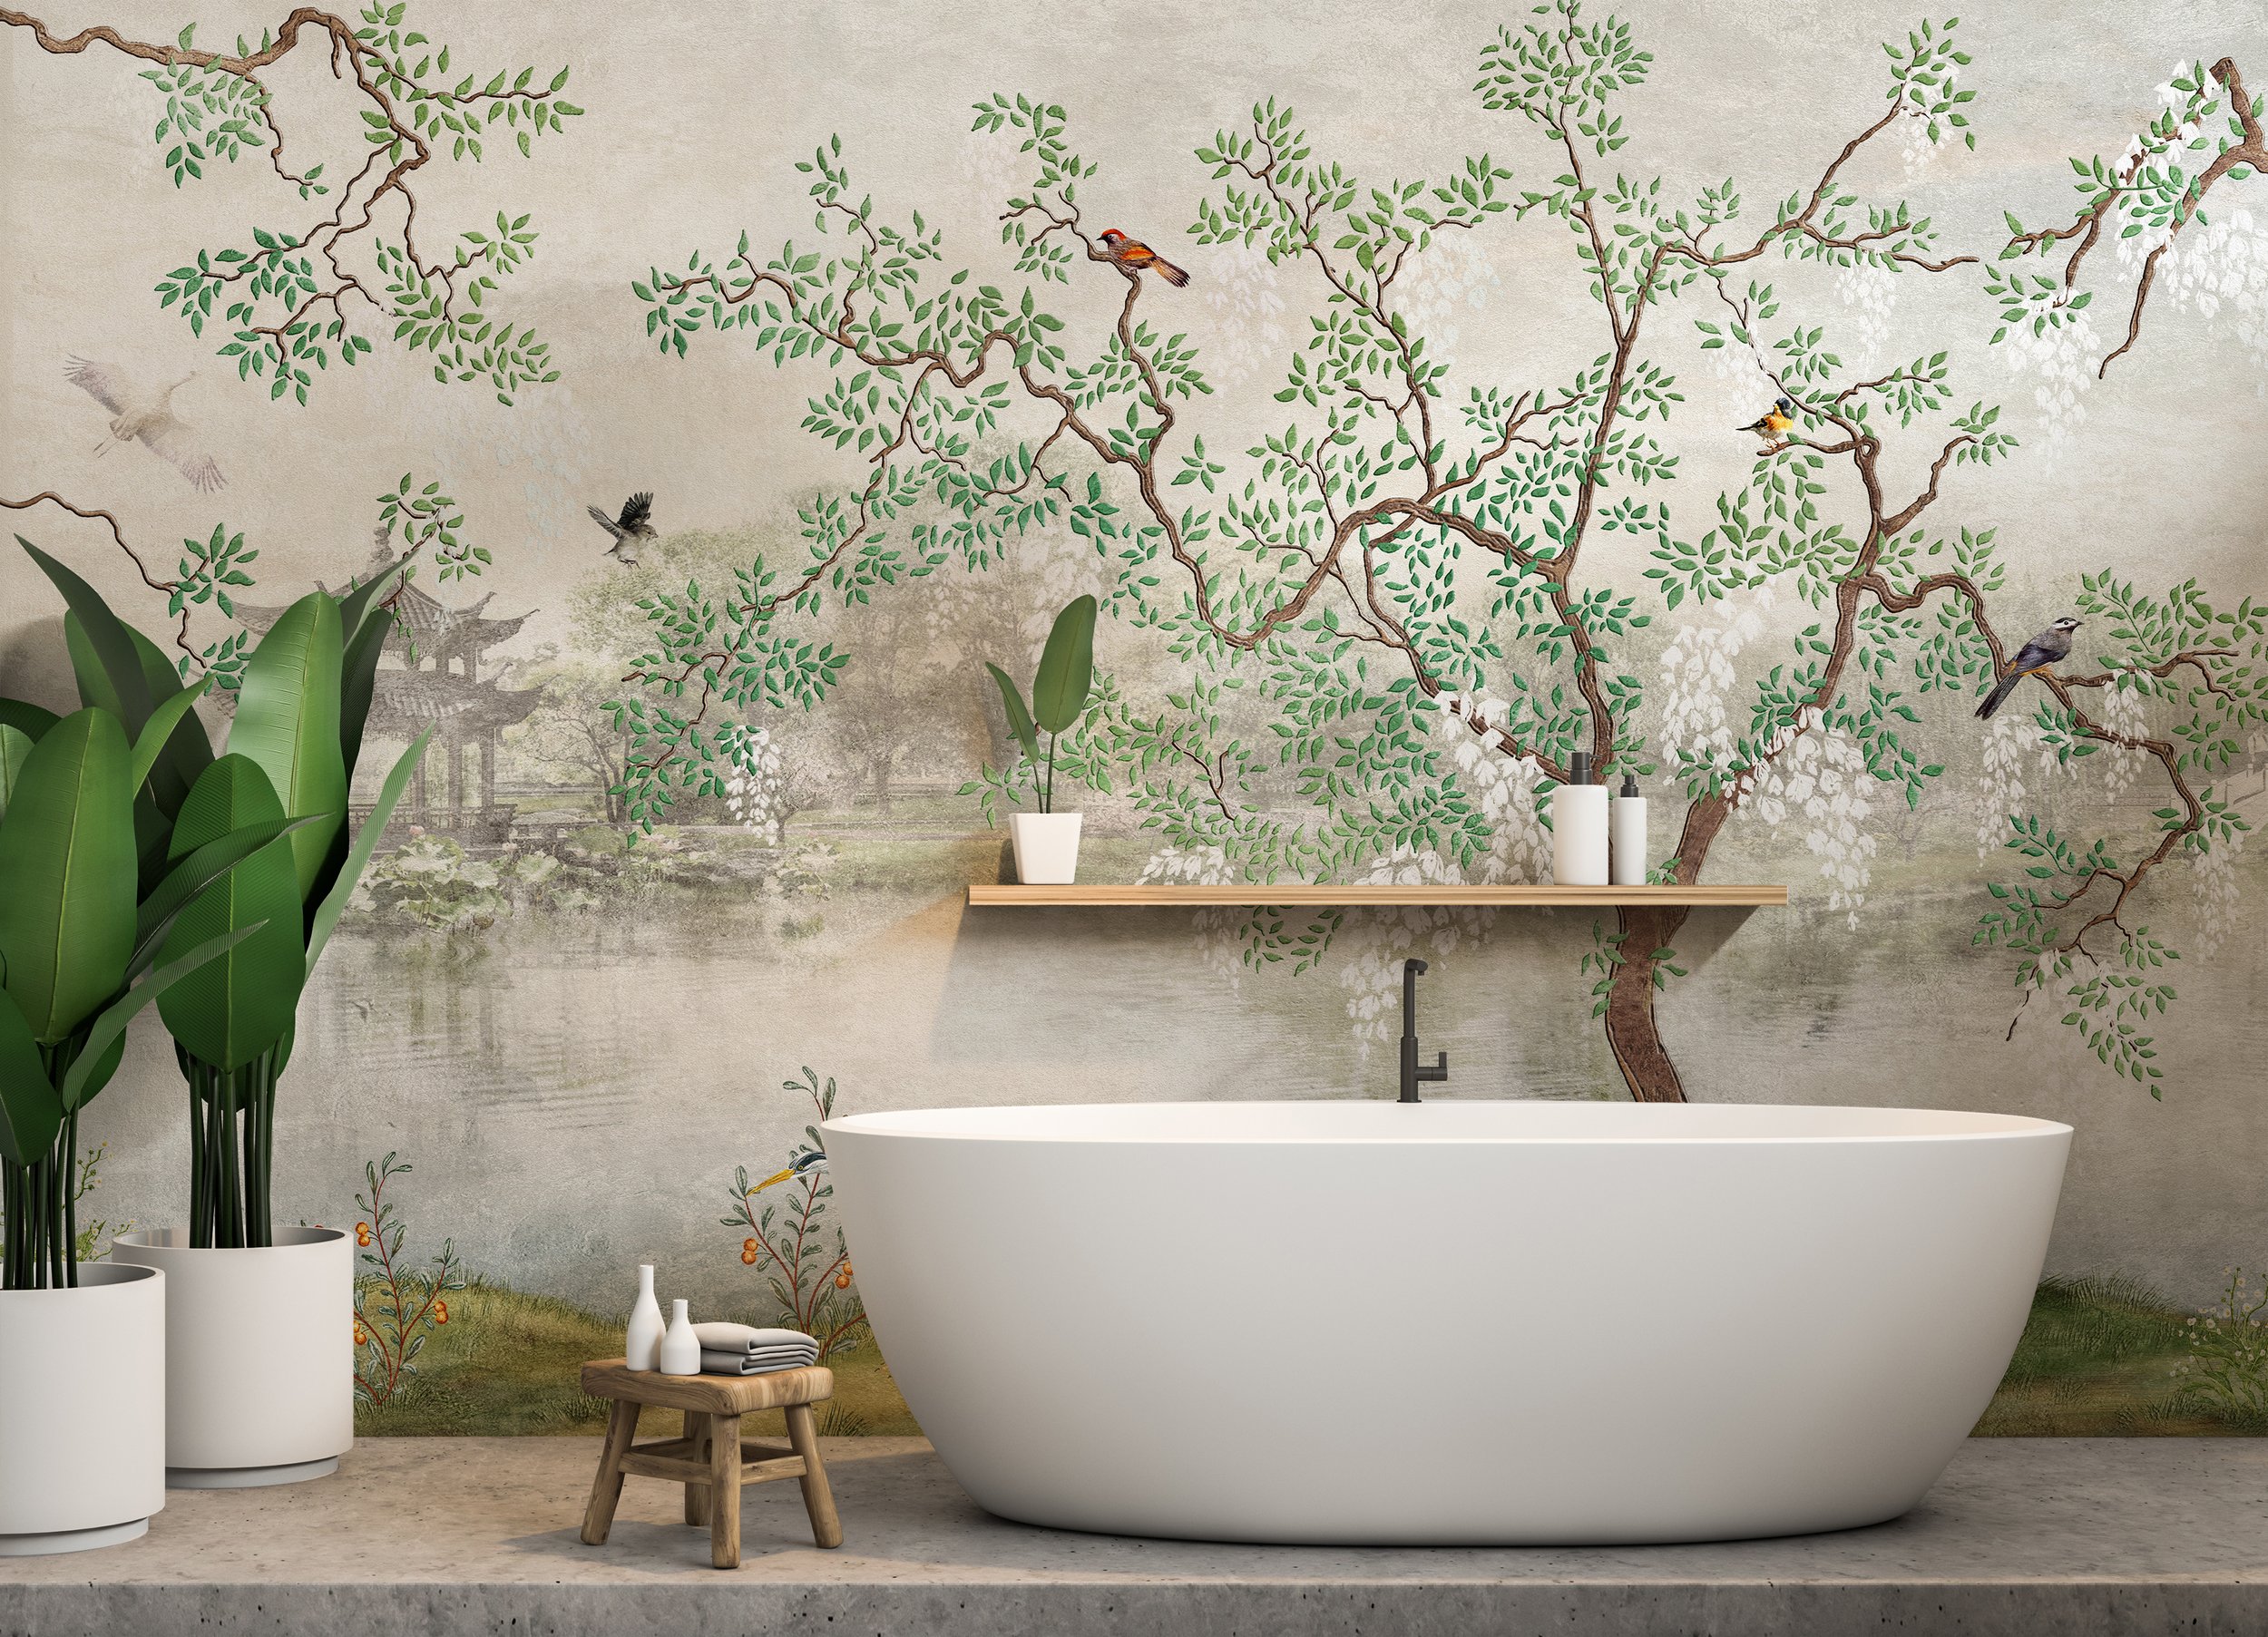 2.WALLSAUCE Chinoiserie Garden Wallpaper Mural €40 per m2, 